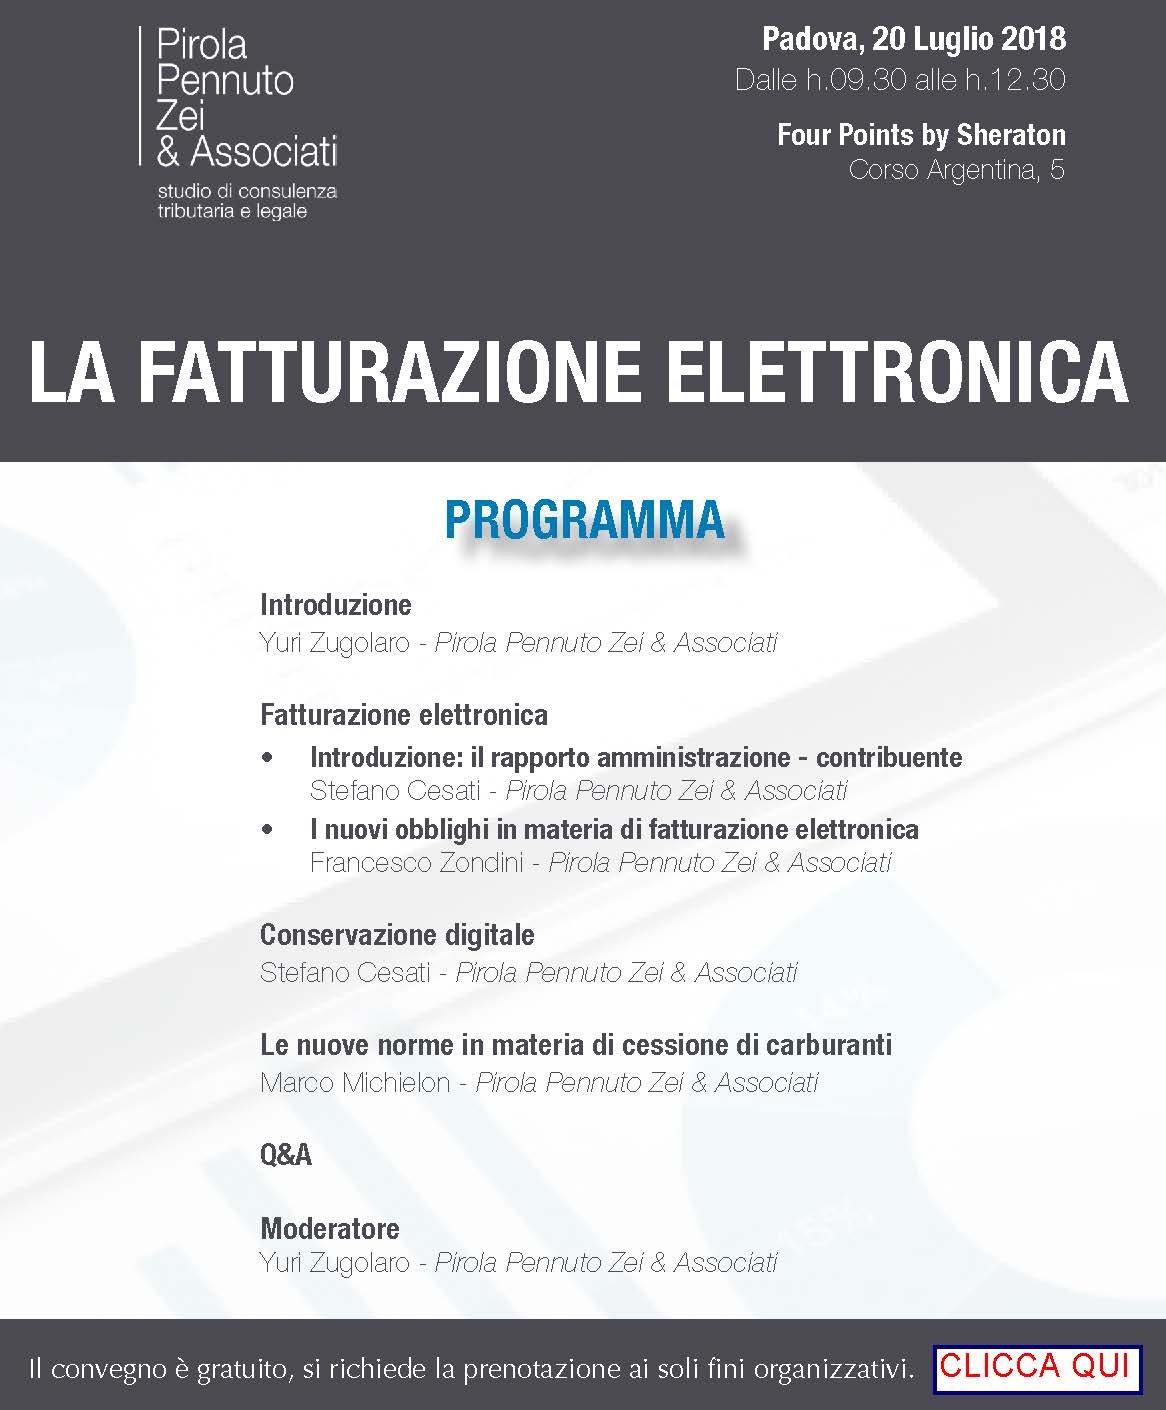 Fatturazione elettronica Padova programma